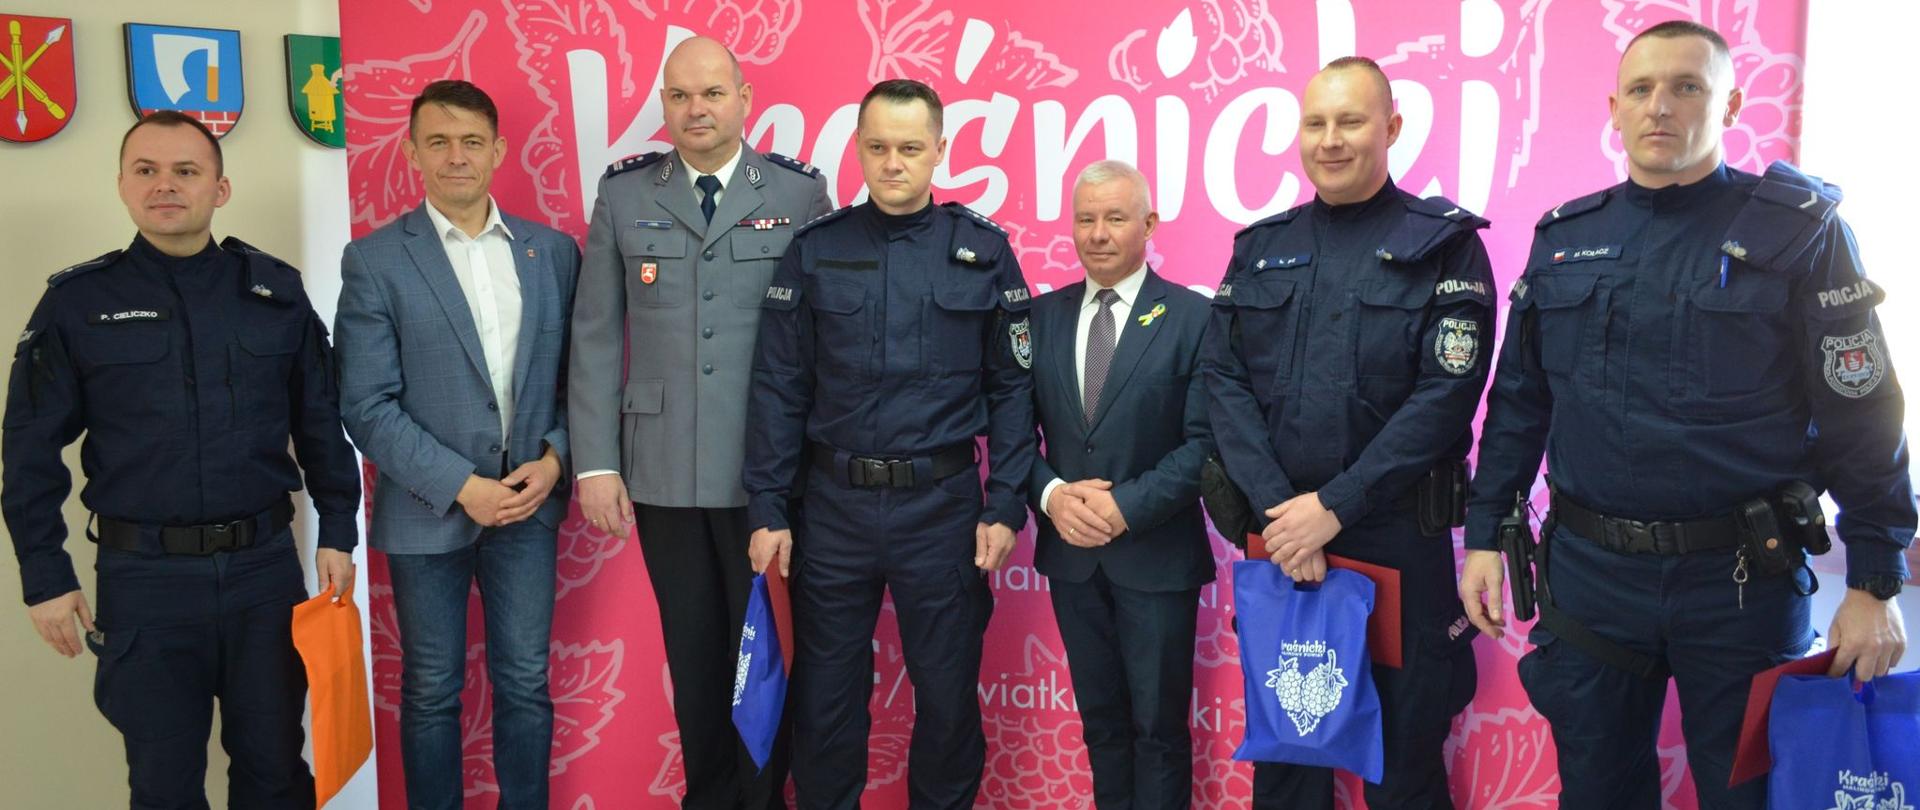 Starosta Kraśnicki Andrzej Rolla oraz Przewodniczący Rady Powiatu Kraśnickiego Jacek Dubiel podziękowali za wzorową postawę kraśnickim policjantom